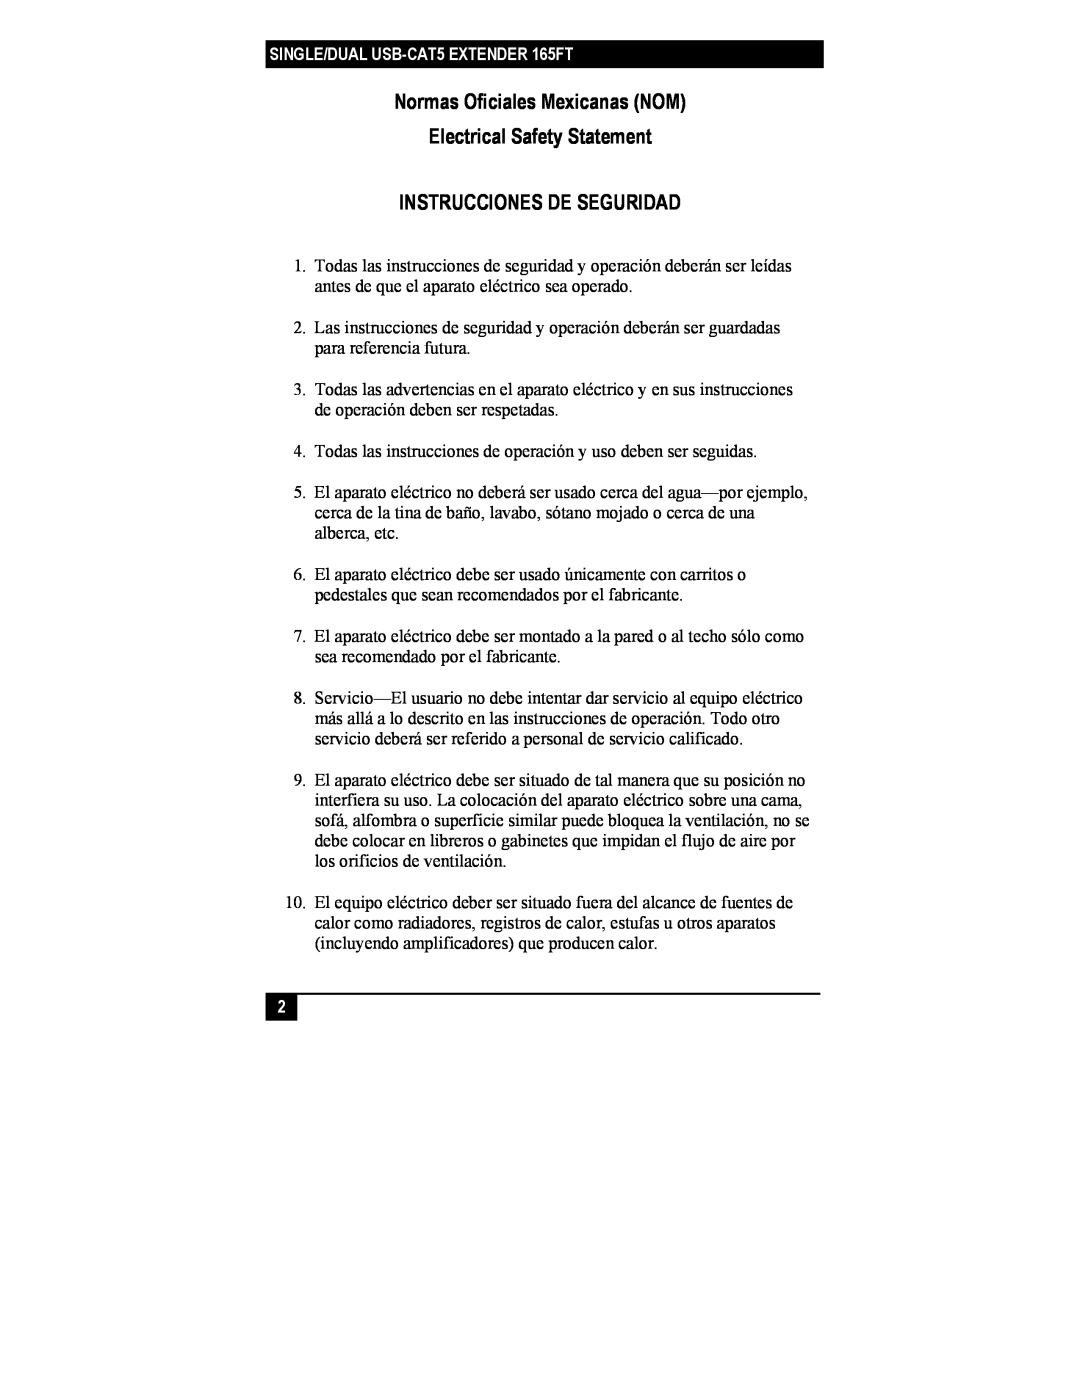 Black Box IC246A-R2, IC244A-R2 Normas Oficiales Mexicanas NOM, Electrical Safety Statement, Instrucciones De Seguridad 